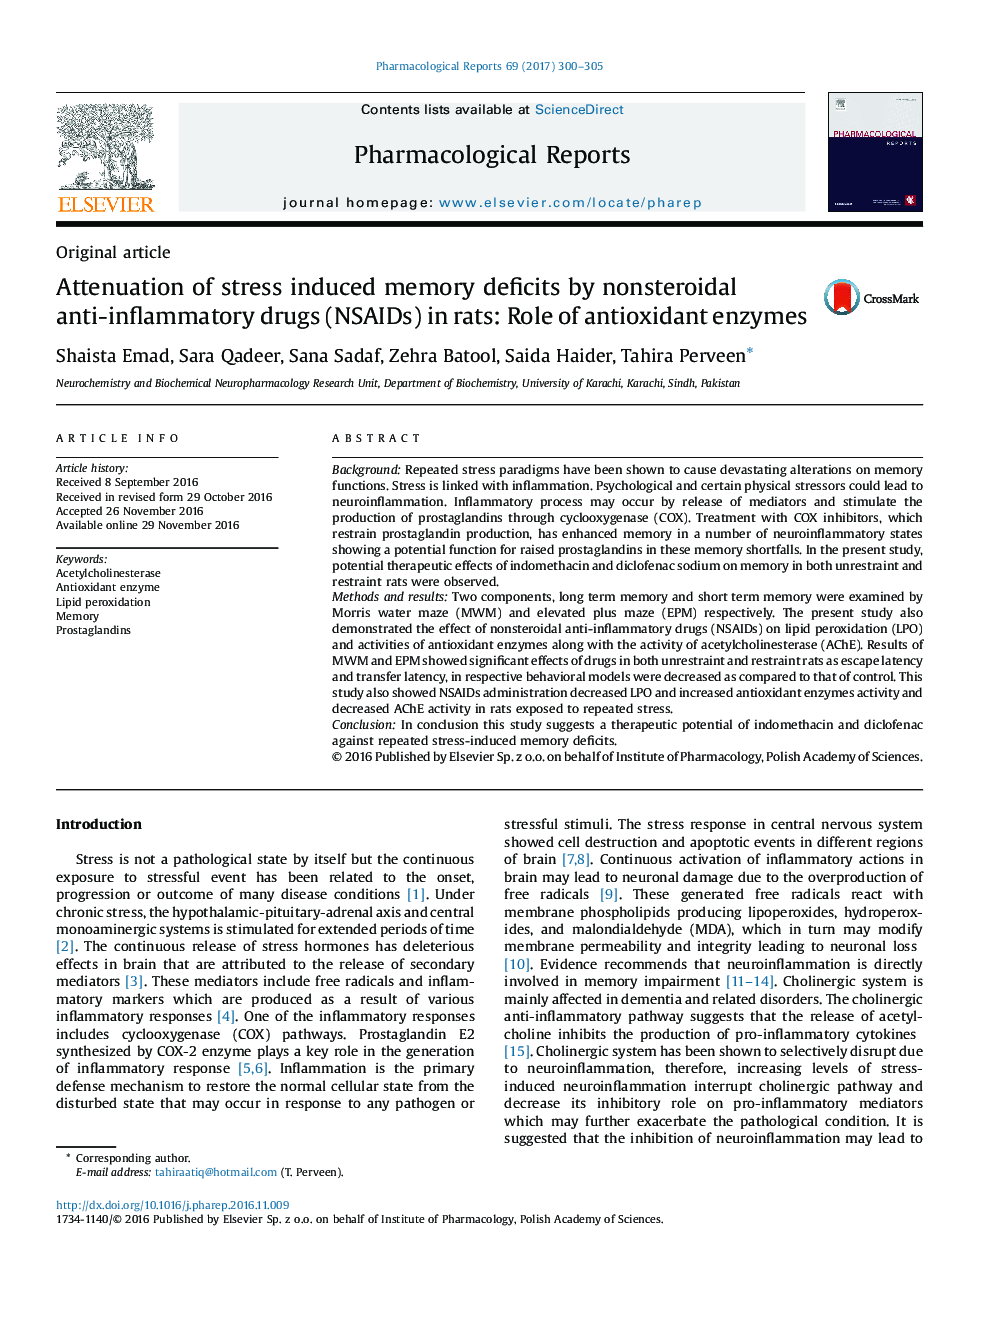 مقاله کوتاه کاهش ضایعات حافظه ناشی از استرس توسط داروهای ضد التهابی غیراستروئیدی در موش صحرایی: نقش آنزیم های آنتیاکسیدان 